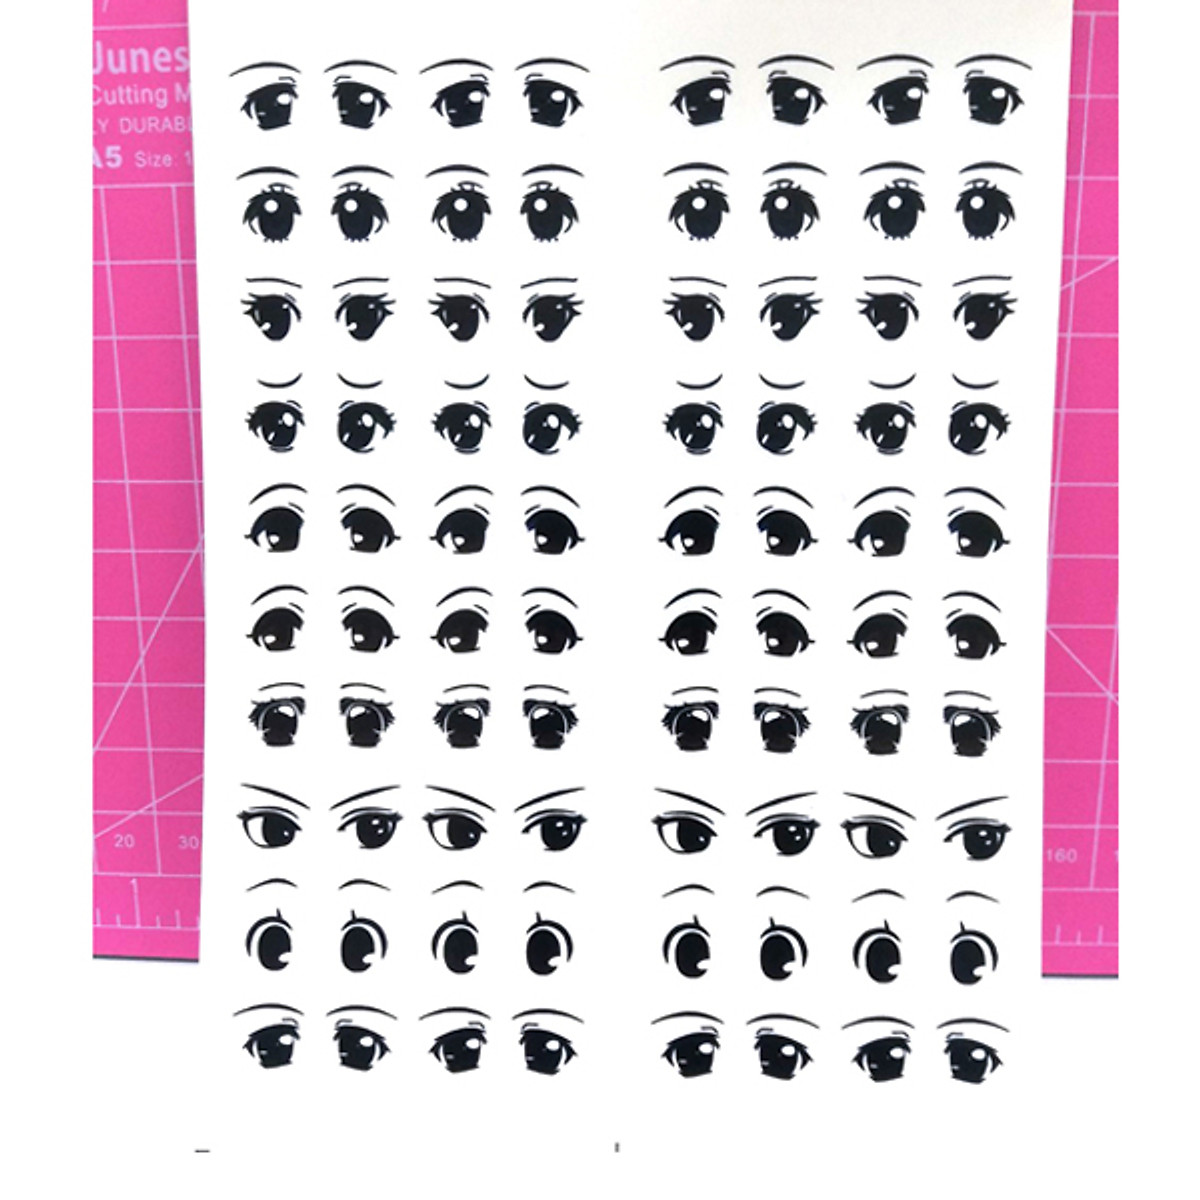 Mắt dán sticker là một loại phụ kiện trang trí độc đáo giúp tạo nên sự khác biệt cho trang phục của bạn. Đặc biệt, mắt dán sticker còn mang tới cho bạn cái nhìn sắc nét và bắt mắt hơn. Hãy cùng xem ngay ảnh về mắt dán sticker trong bộ sưu tập ở đây.